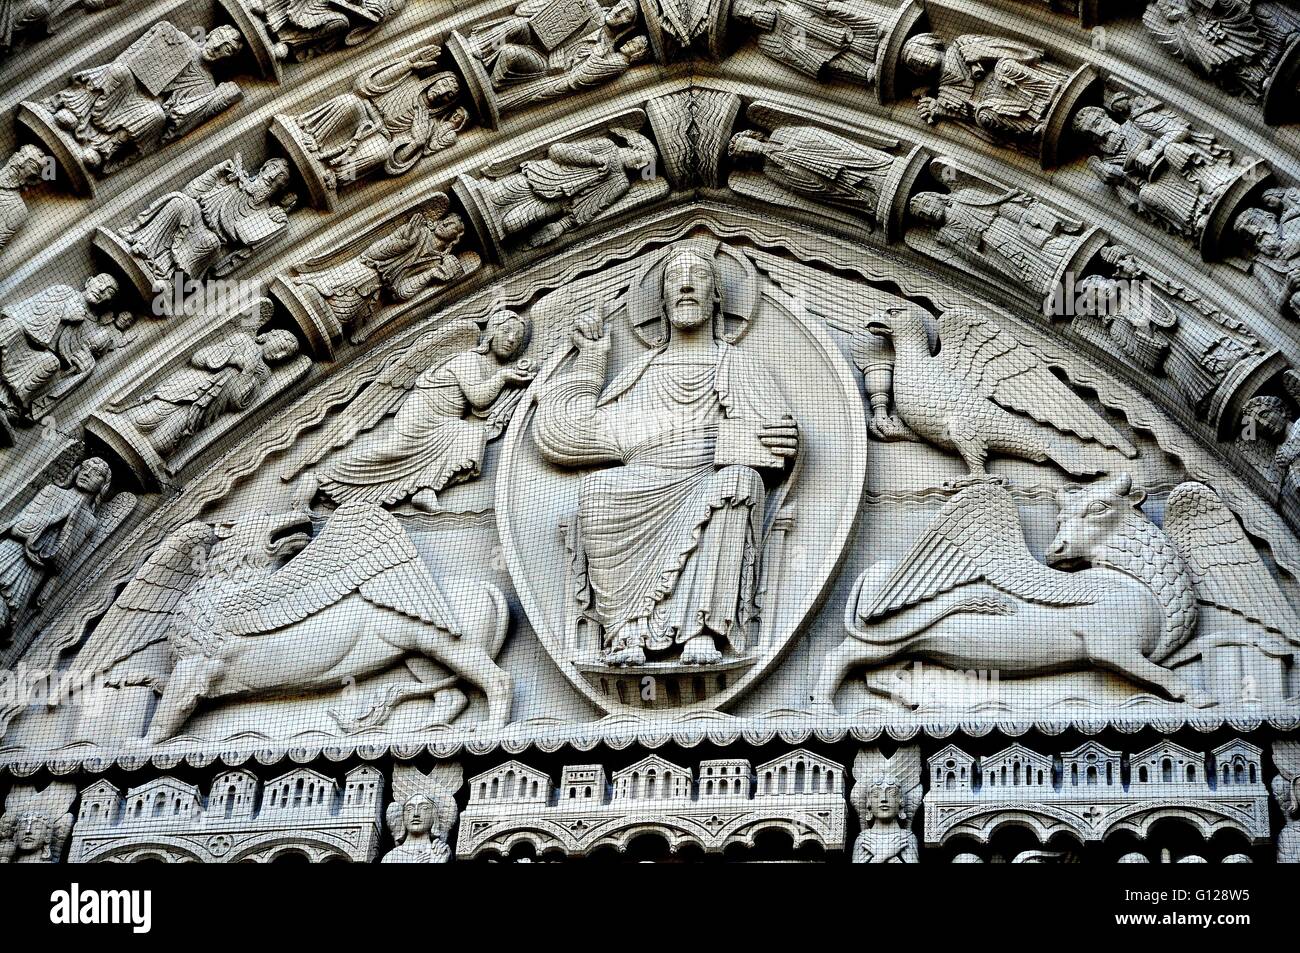 La ville de New York : le Christ en majesté entouré d'anges et animaux mythiques orne le portail d'entrée principal à la Riverside Church Banque D'Images